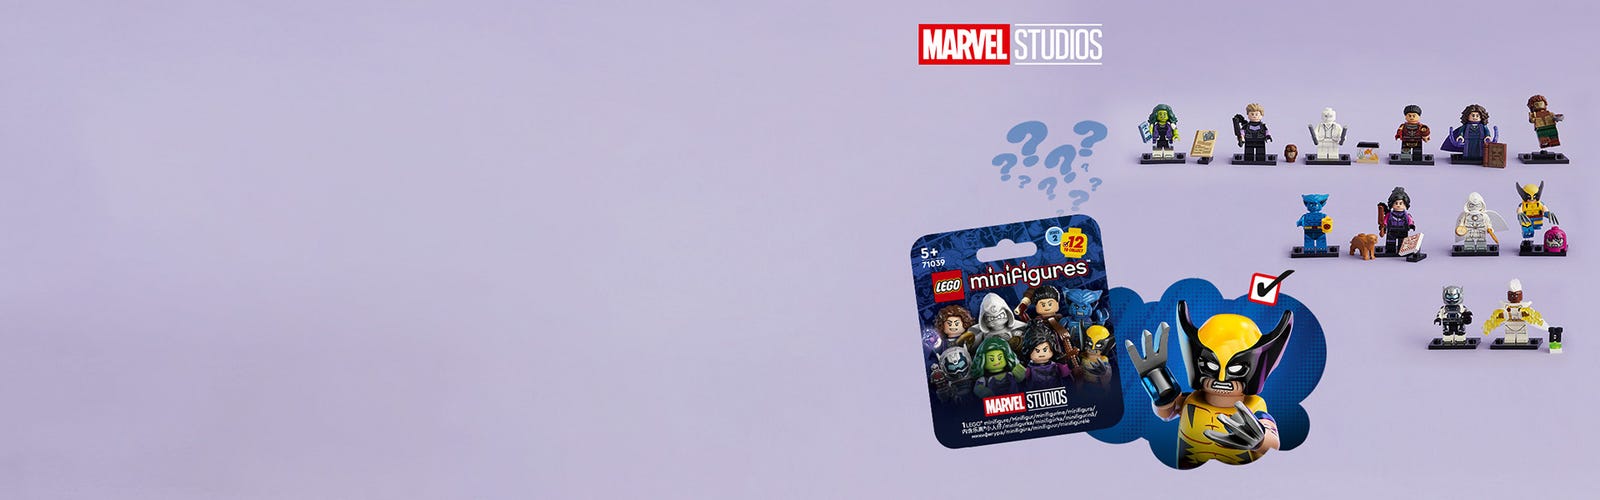 LEGO® Minifigures Marvel Series 2 71039, Minifigures